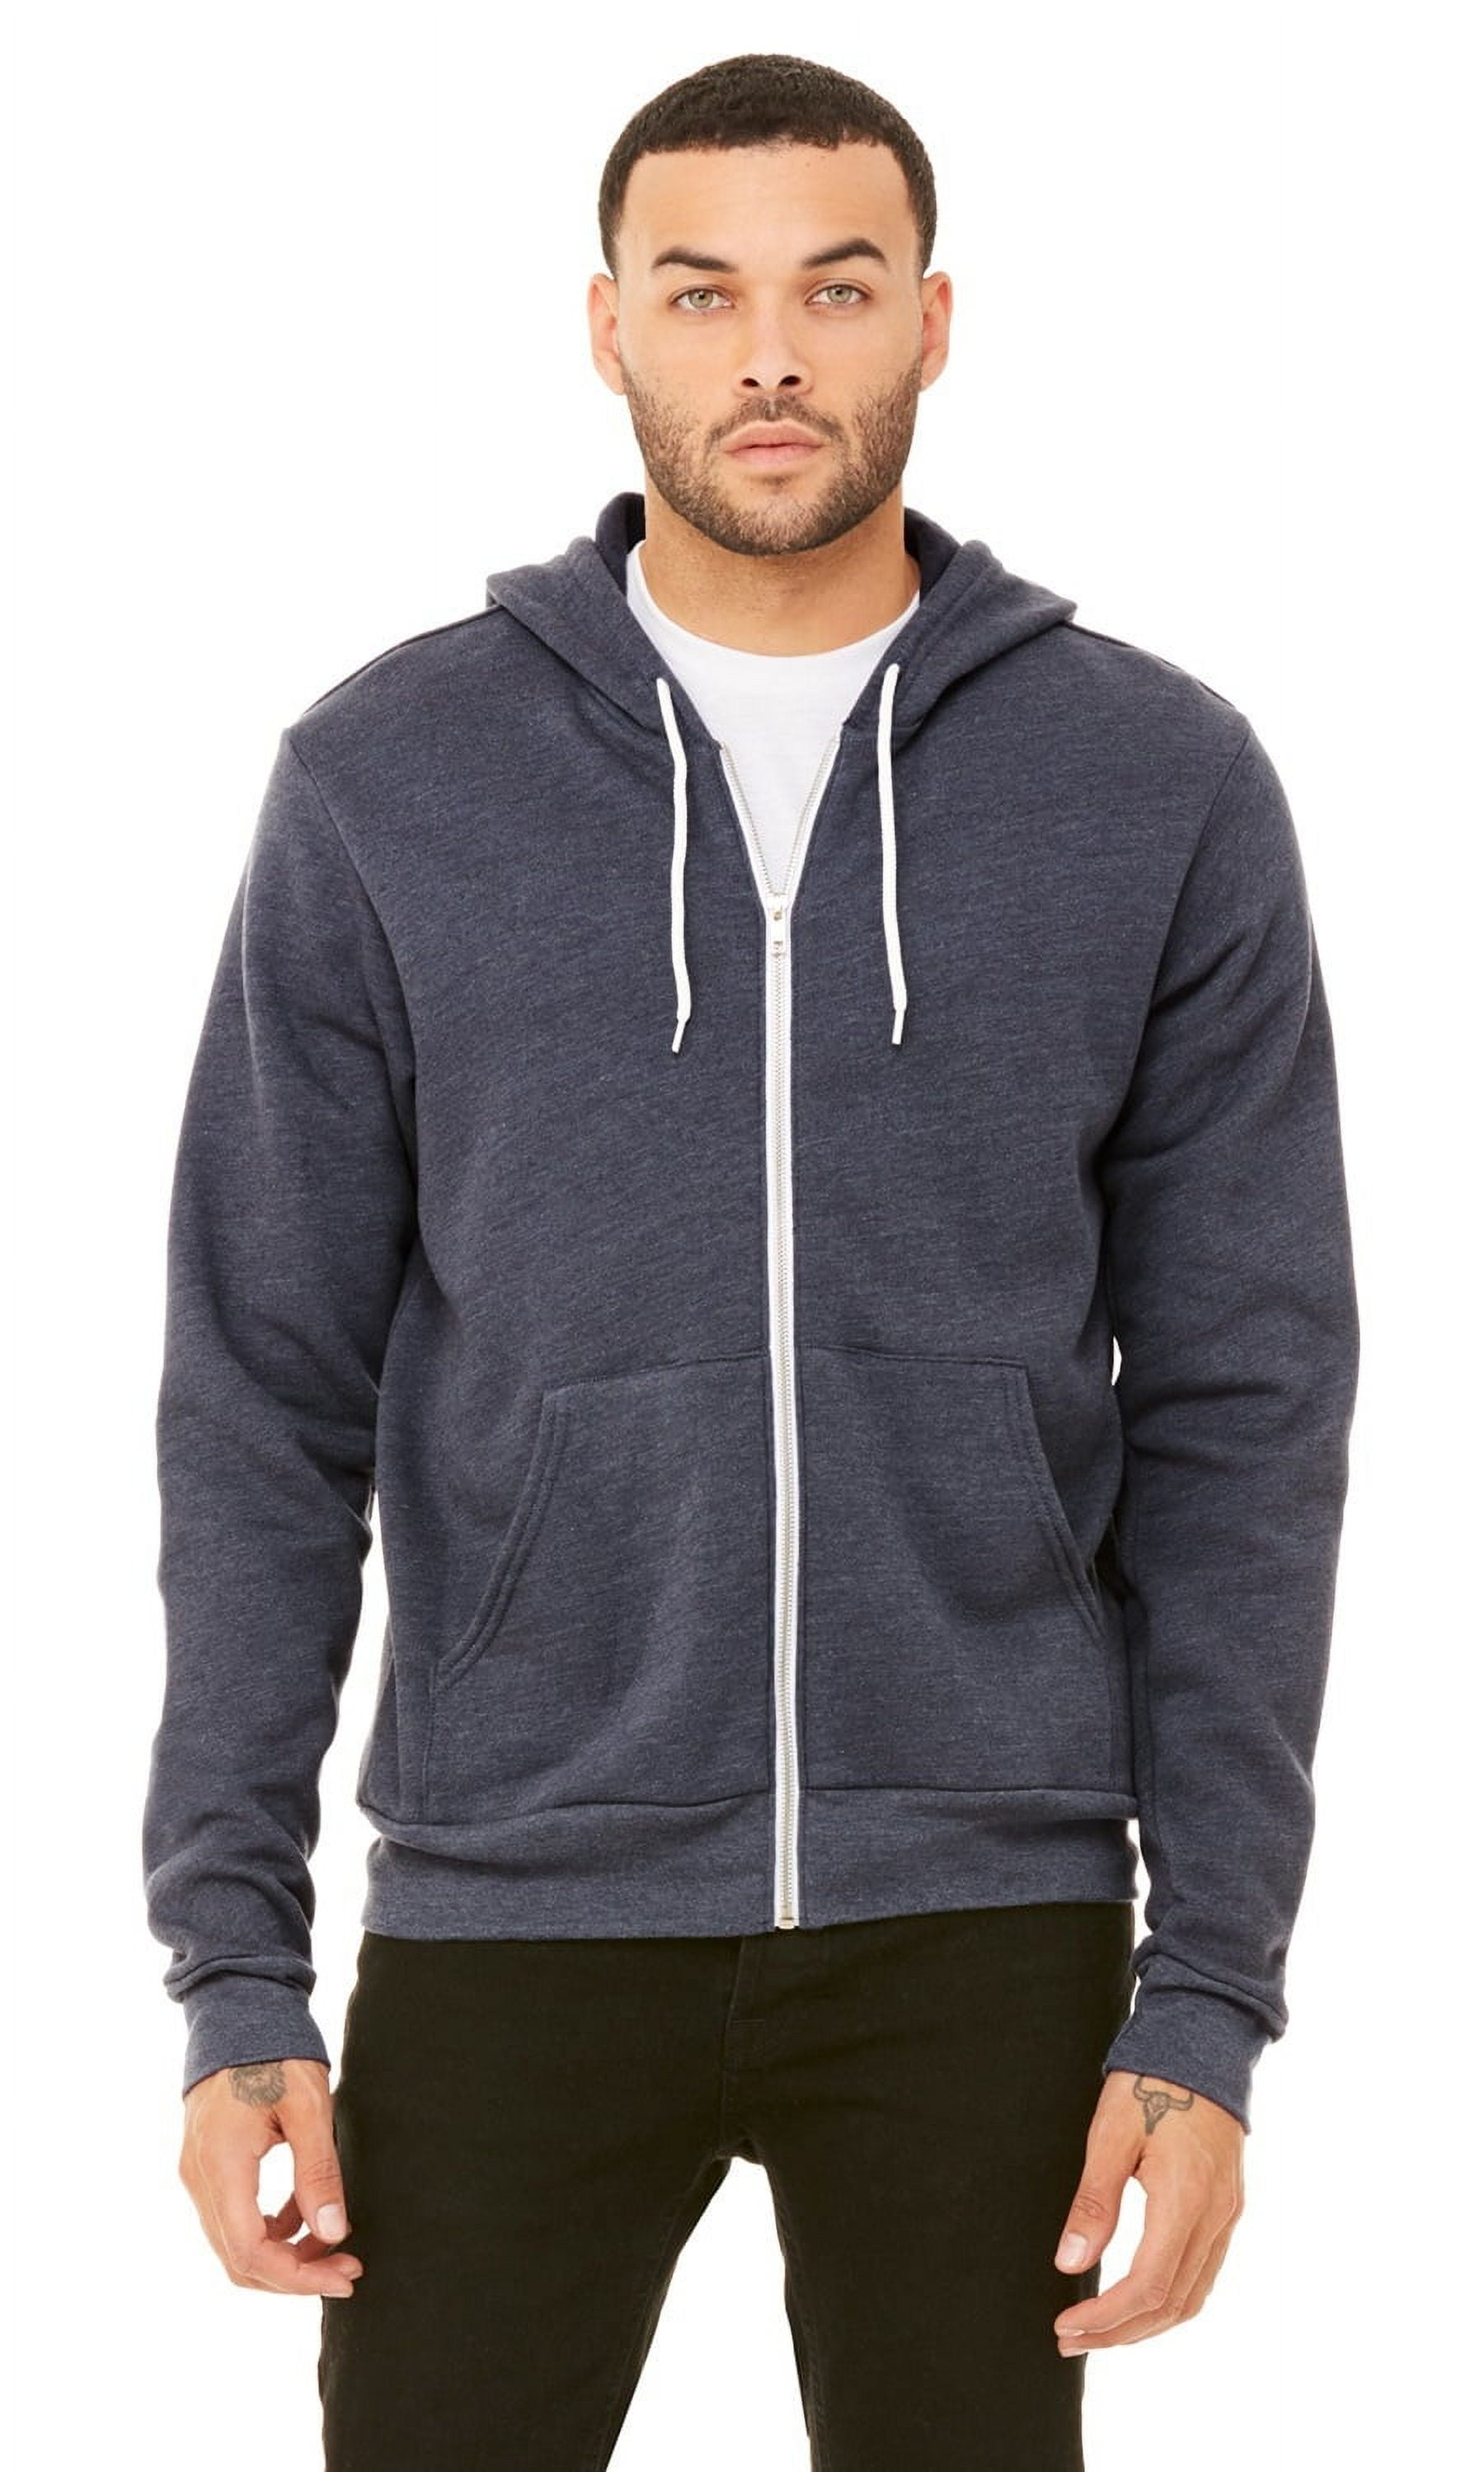 The Unisex Poly-Cotton Sponge Fleece Full-Zip Hooded Sweatshirt